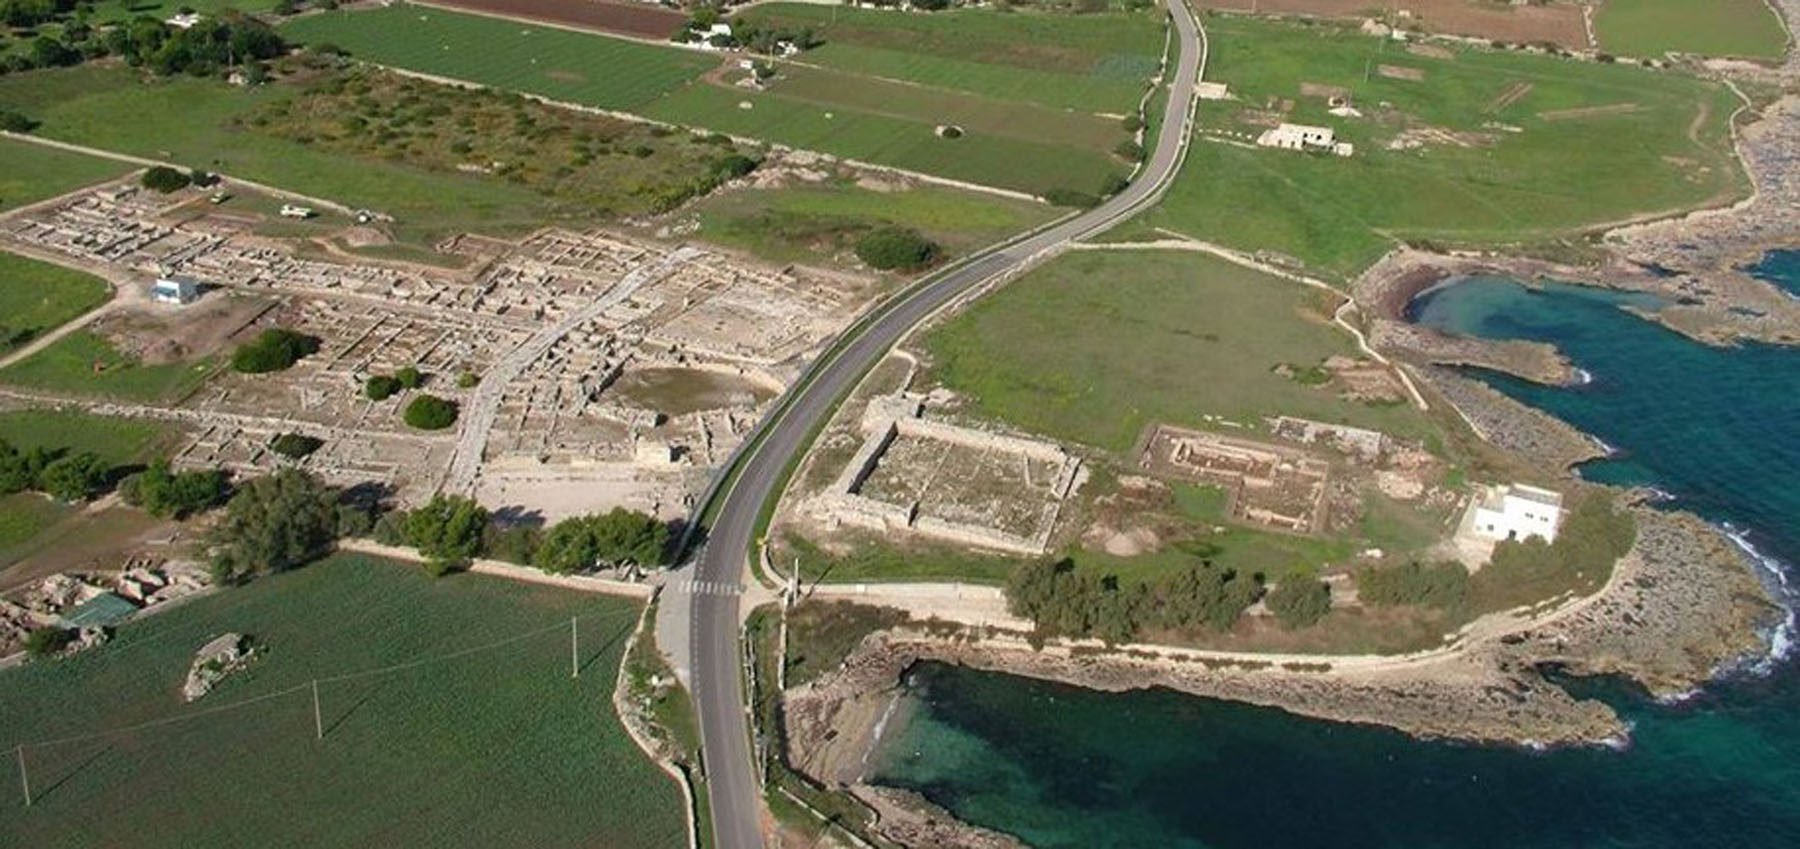 Egnazia – Digitalizzazione – Digitalizzazione del patrimonio culturale del Museo Nazionale e zona archeologica di Egnazia per il miglioramento della fruizione